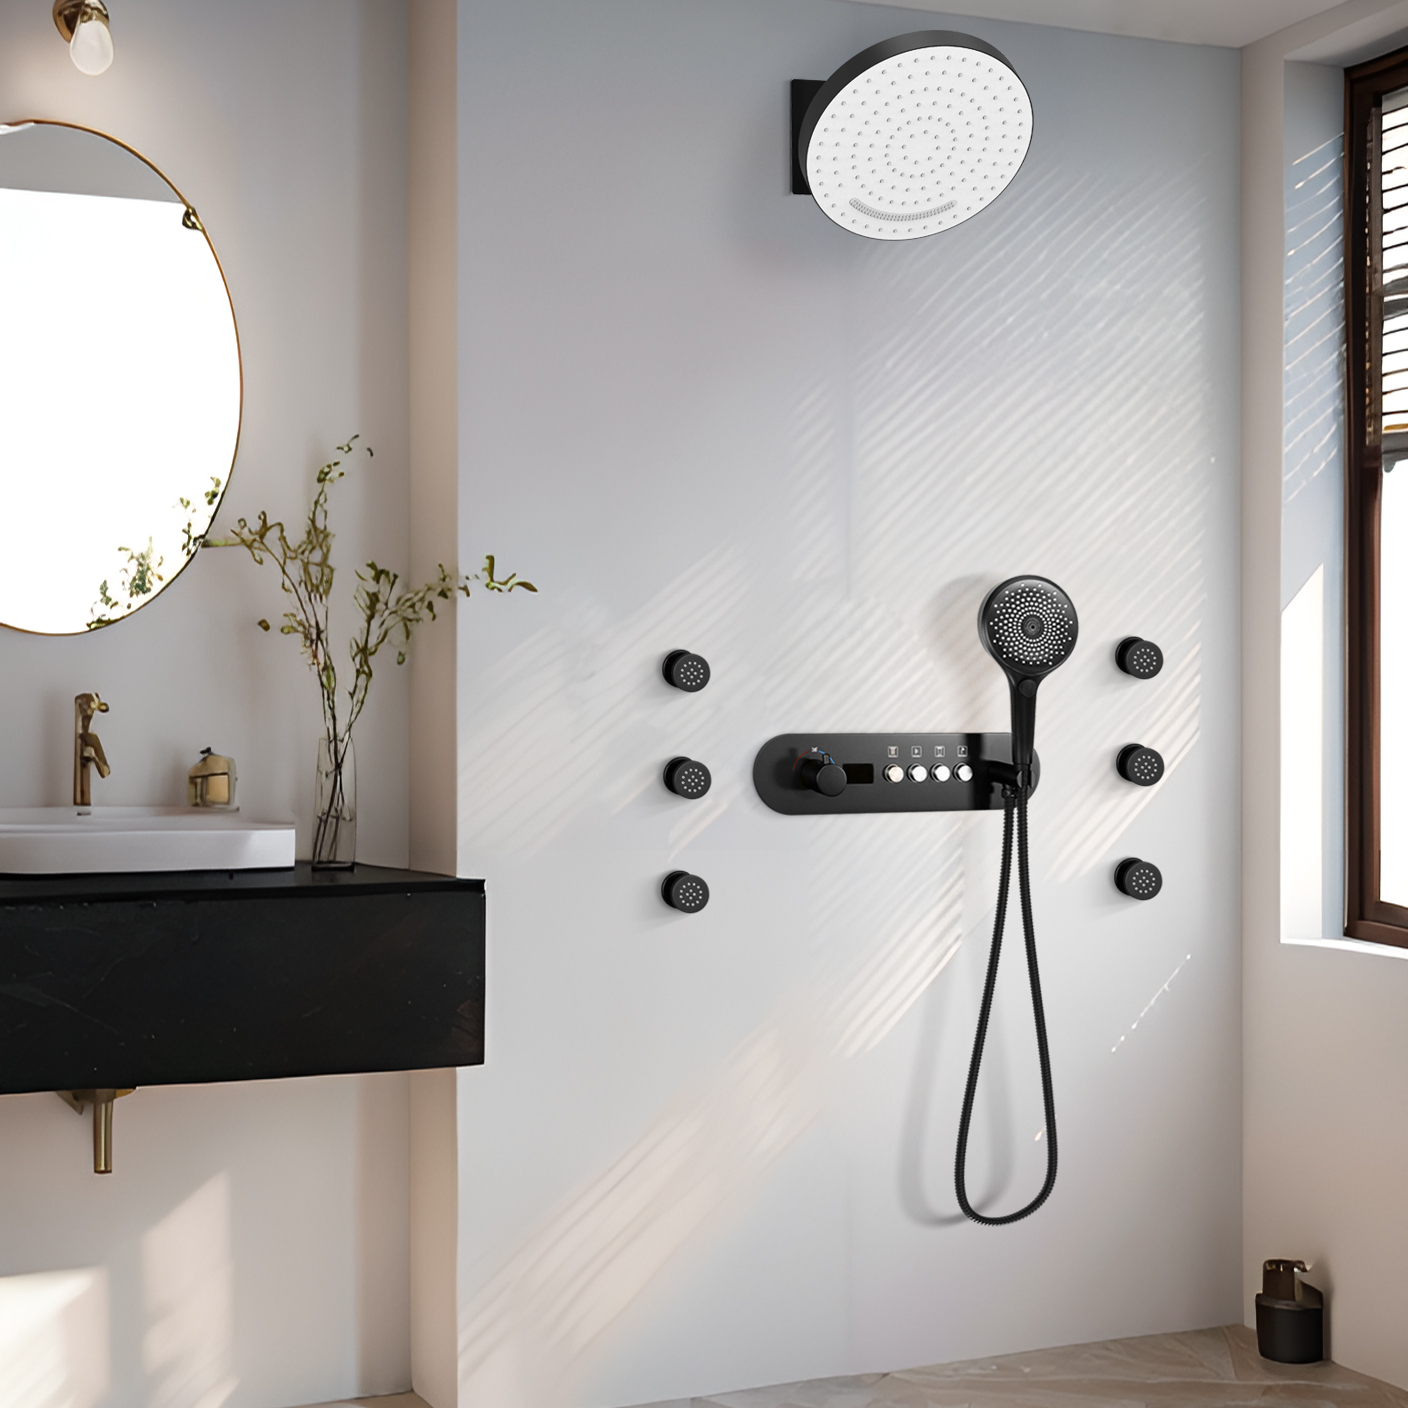 جناح غرفة الاستحمام ذو الجدار الأسود المتدفق، درجة حرارة ثابتة، صنبور مياه الدش الصريح